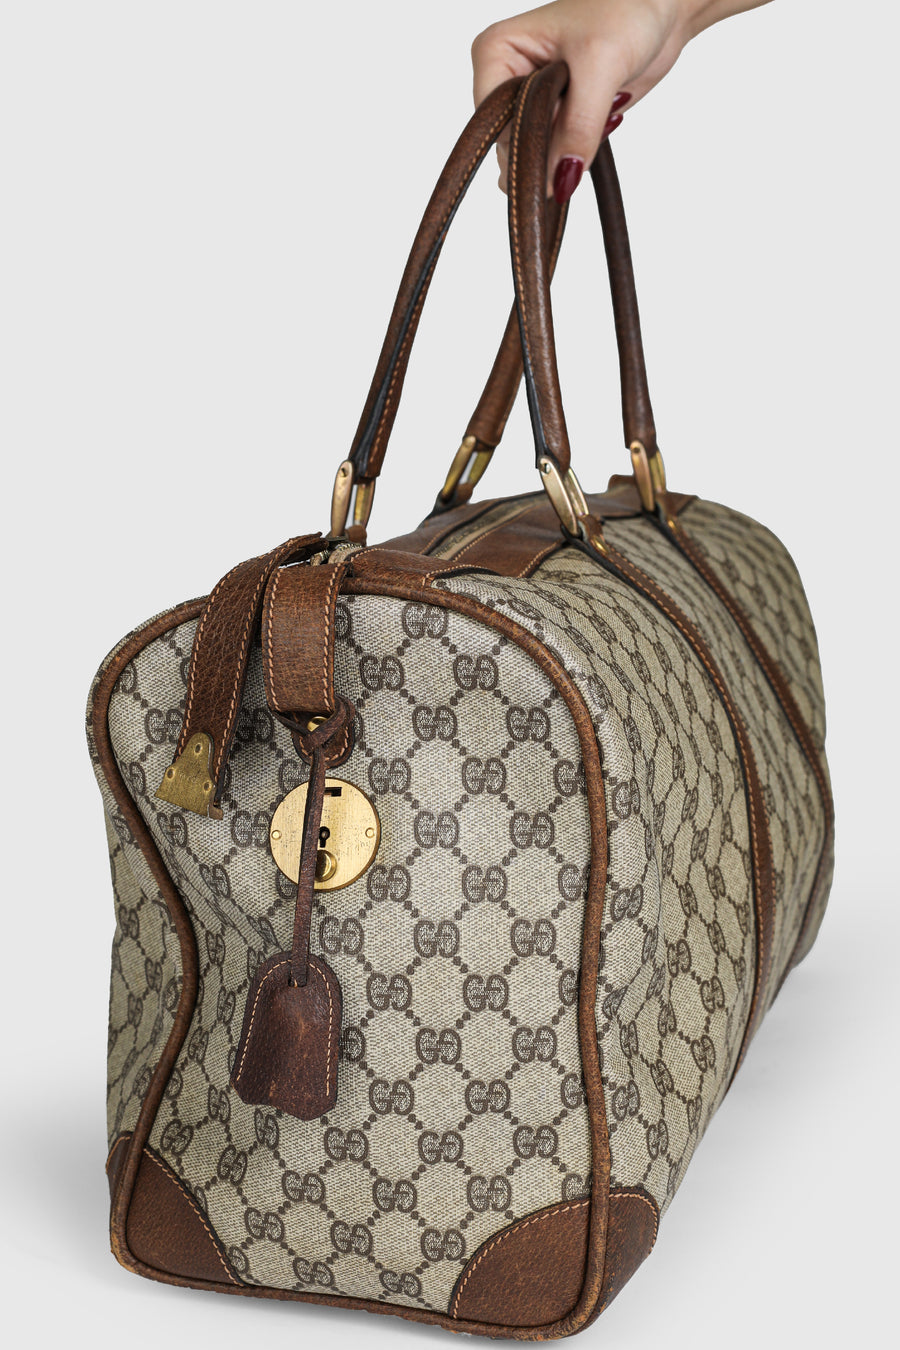 Adidas x Gucci Large Duffle Bag | eBay